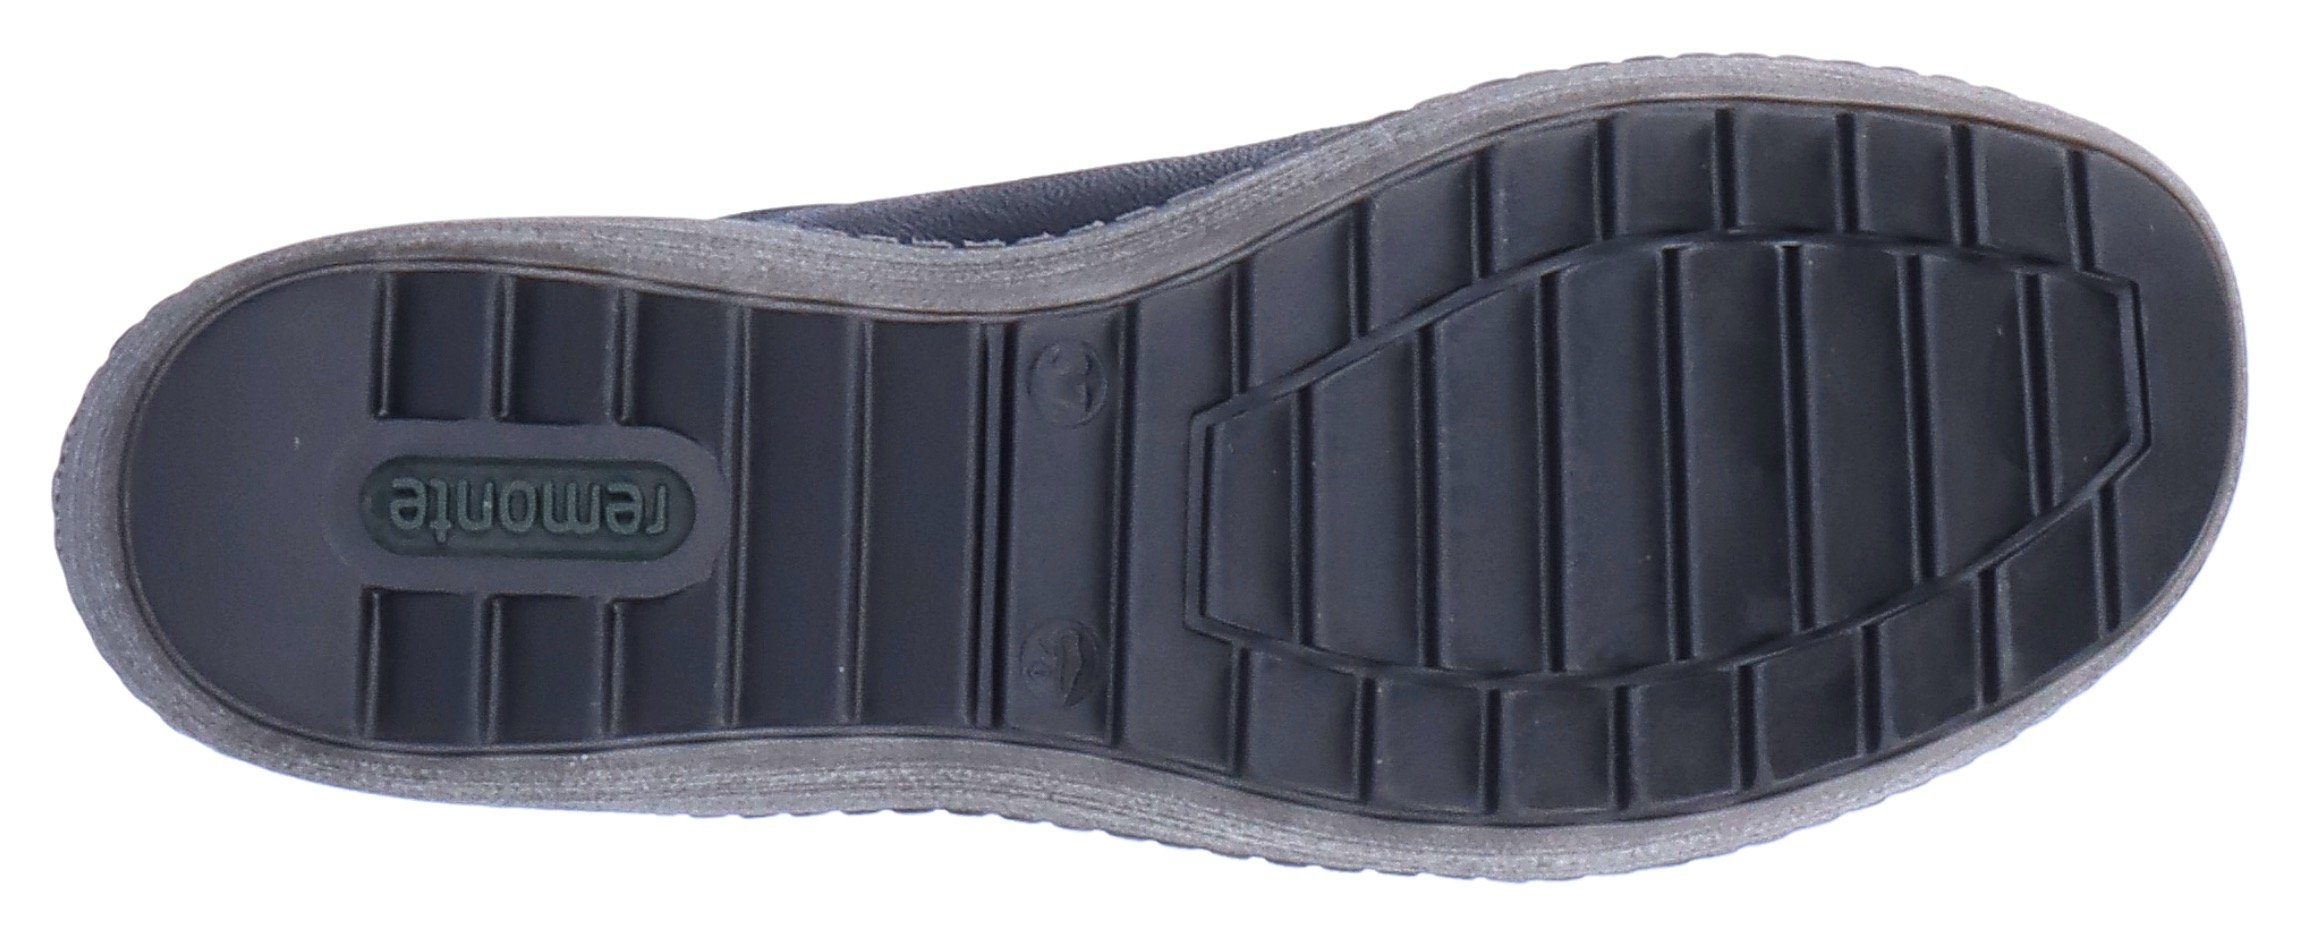 Schnürschuh schwarz-silberfarben Tex-Ausstattung Remonte mit